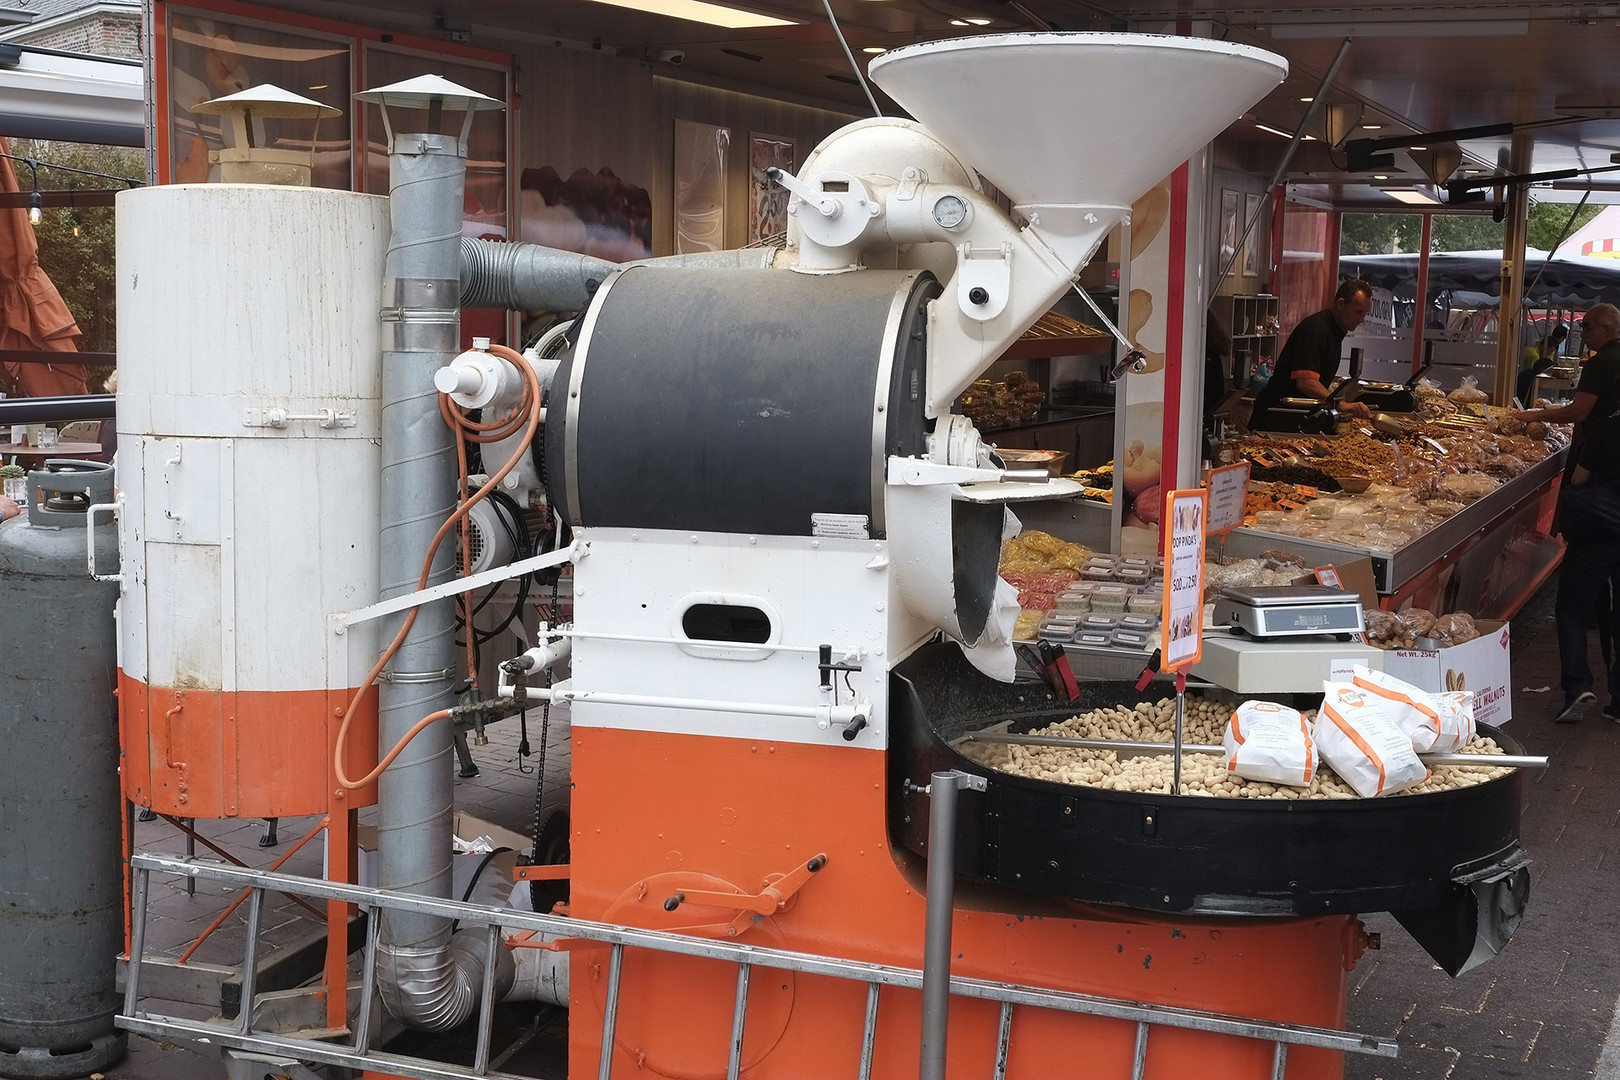 Erdnussröstmaschine auf dem Wochenmarkt in Domburg (Provinz Zeeland, NL)